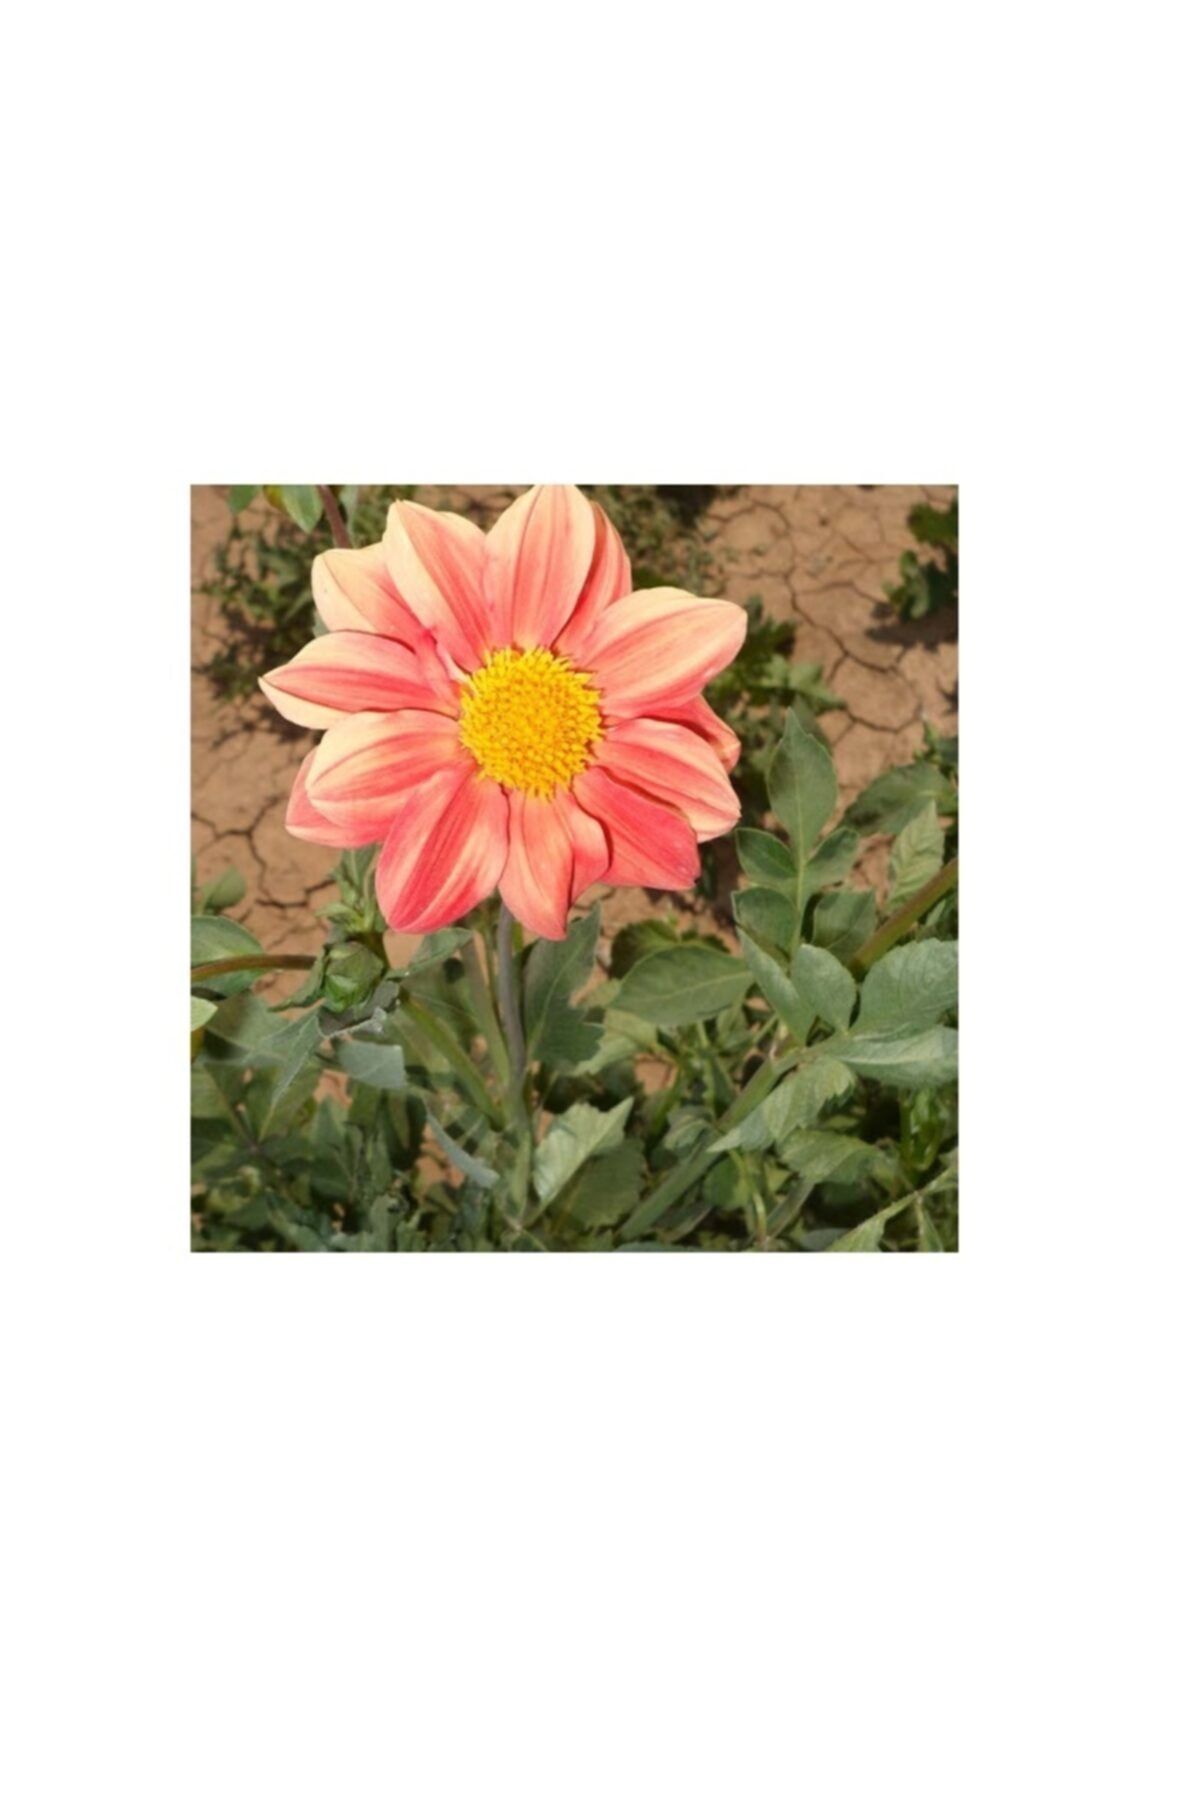 Fide Sepeti Çiçek Tohumu Yıldız Çiçeği (dahlia) 1 Paket